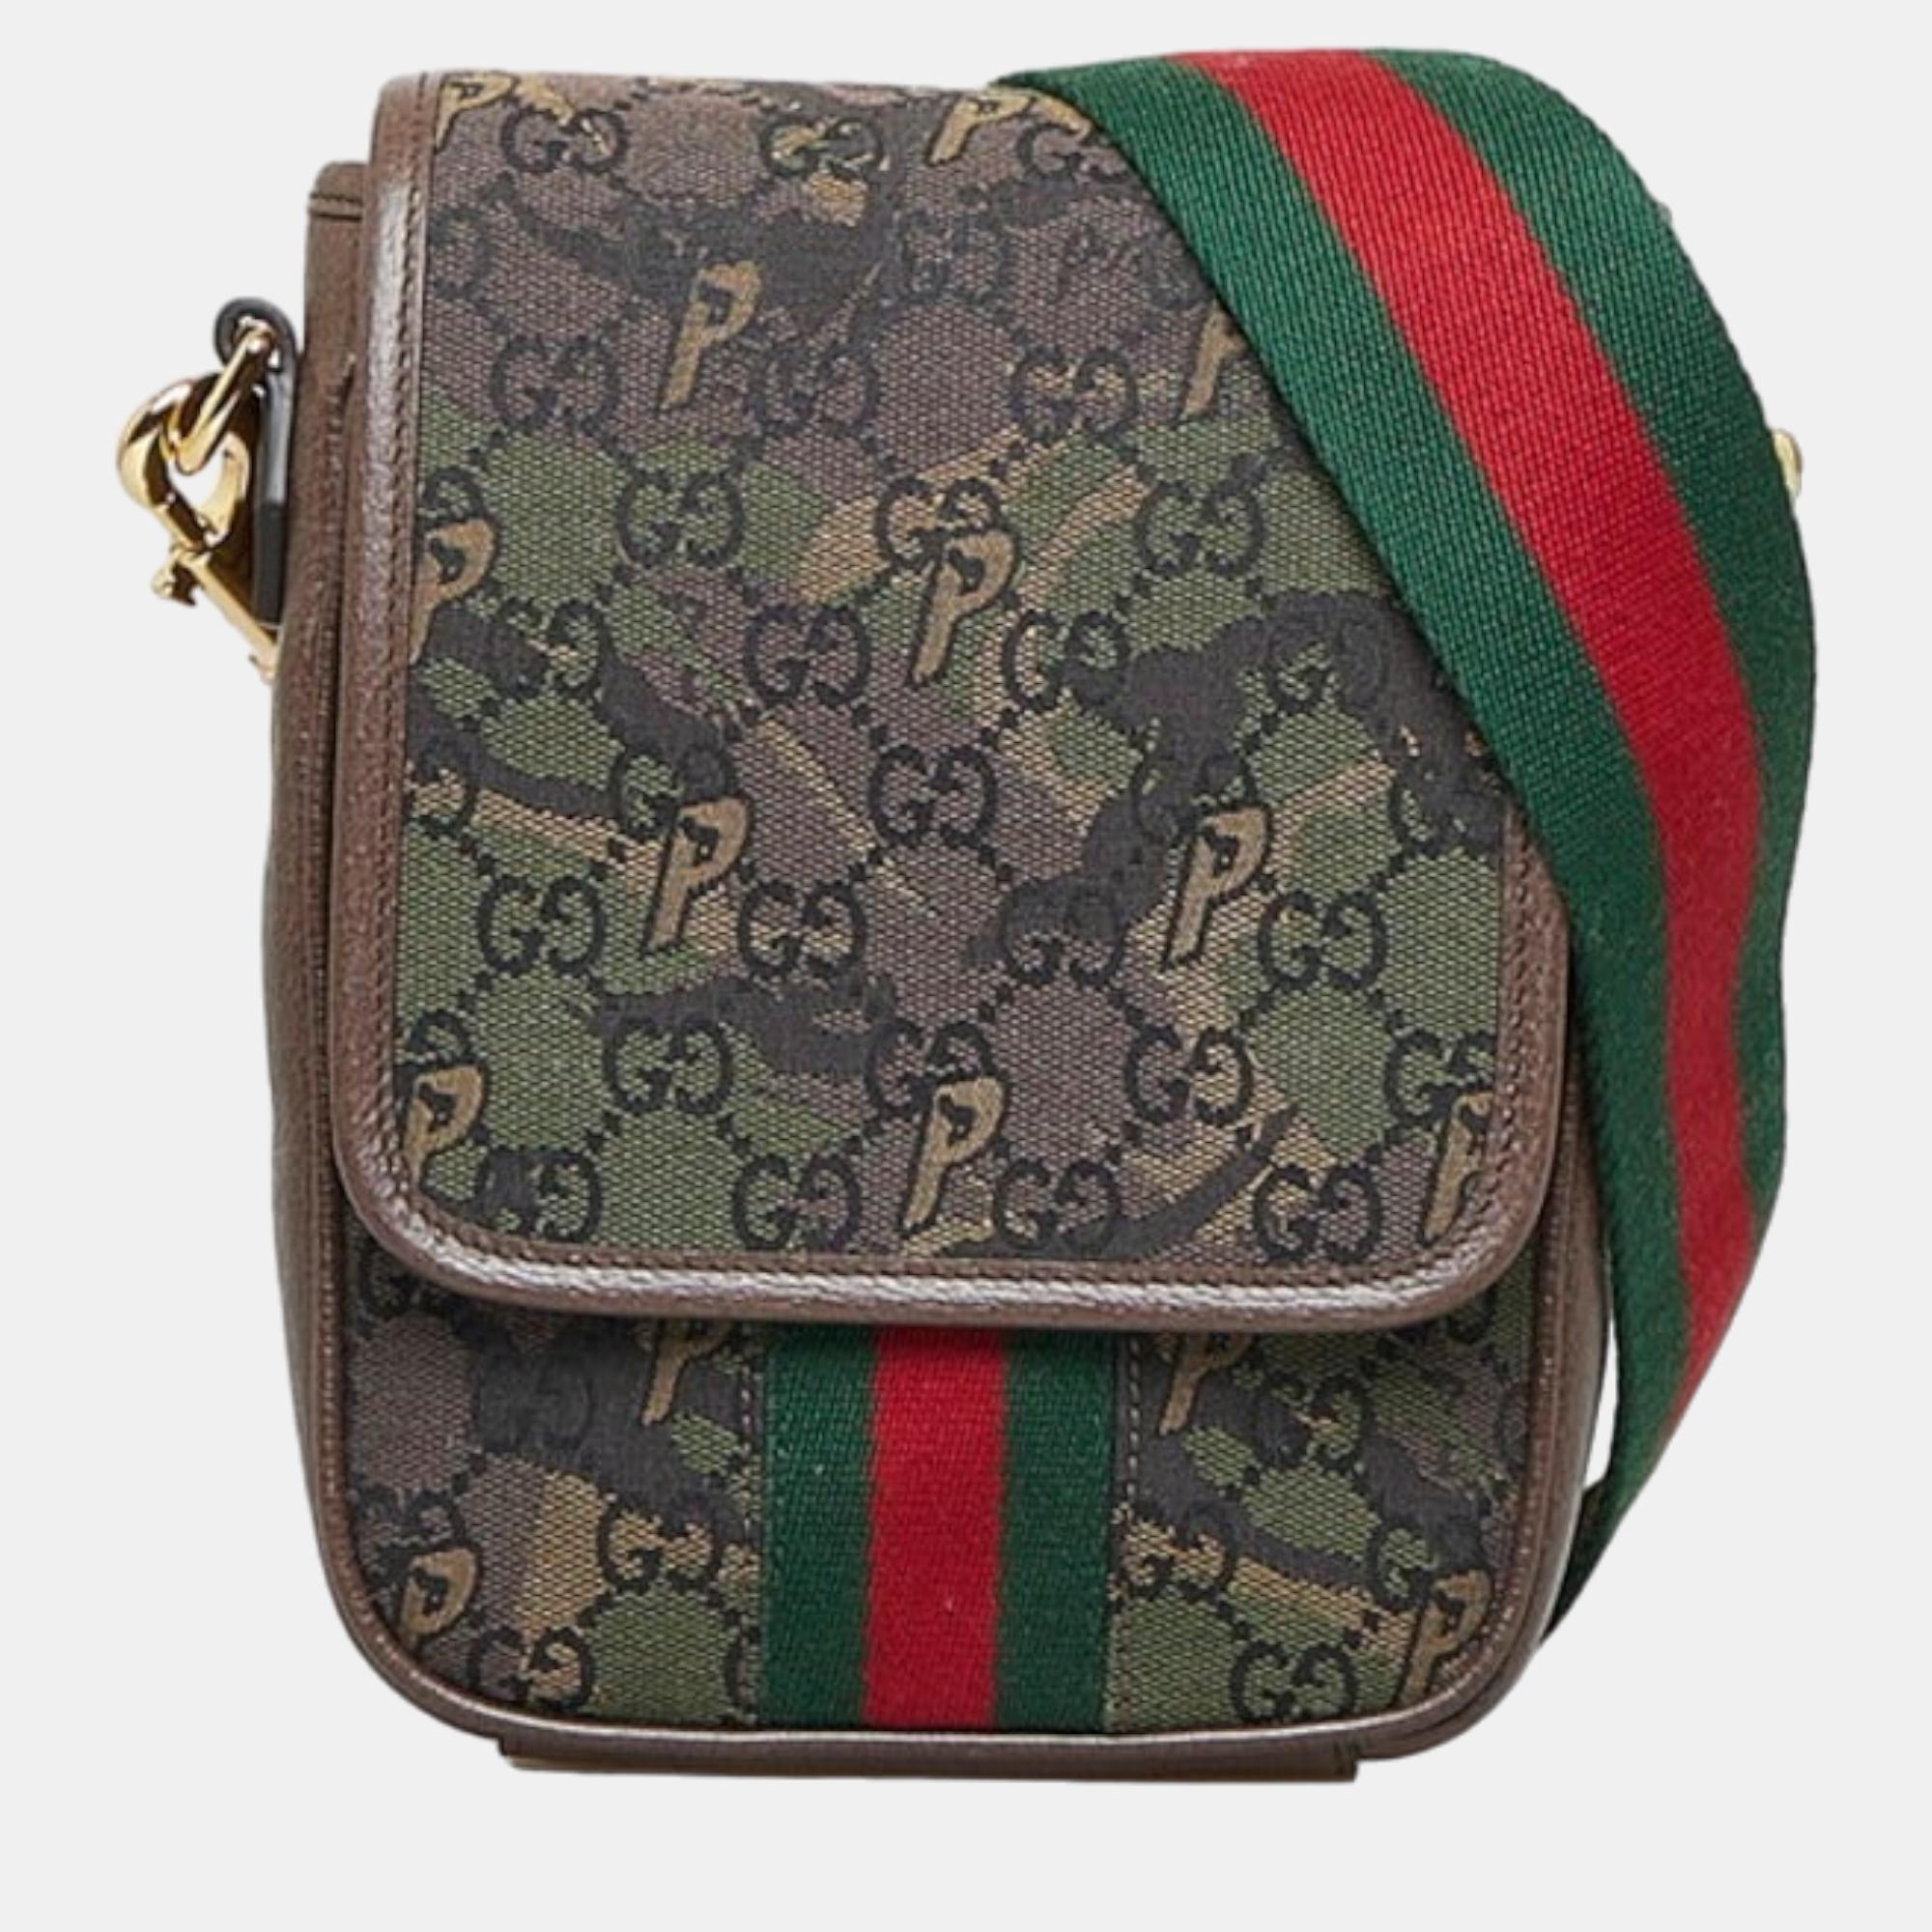 

Gucci X Palace GG Canvas Monogram Web Flap Messenger Bag, Beige